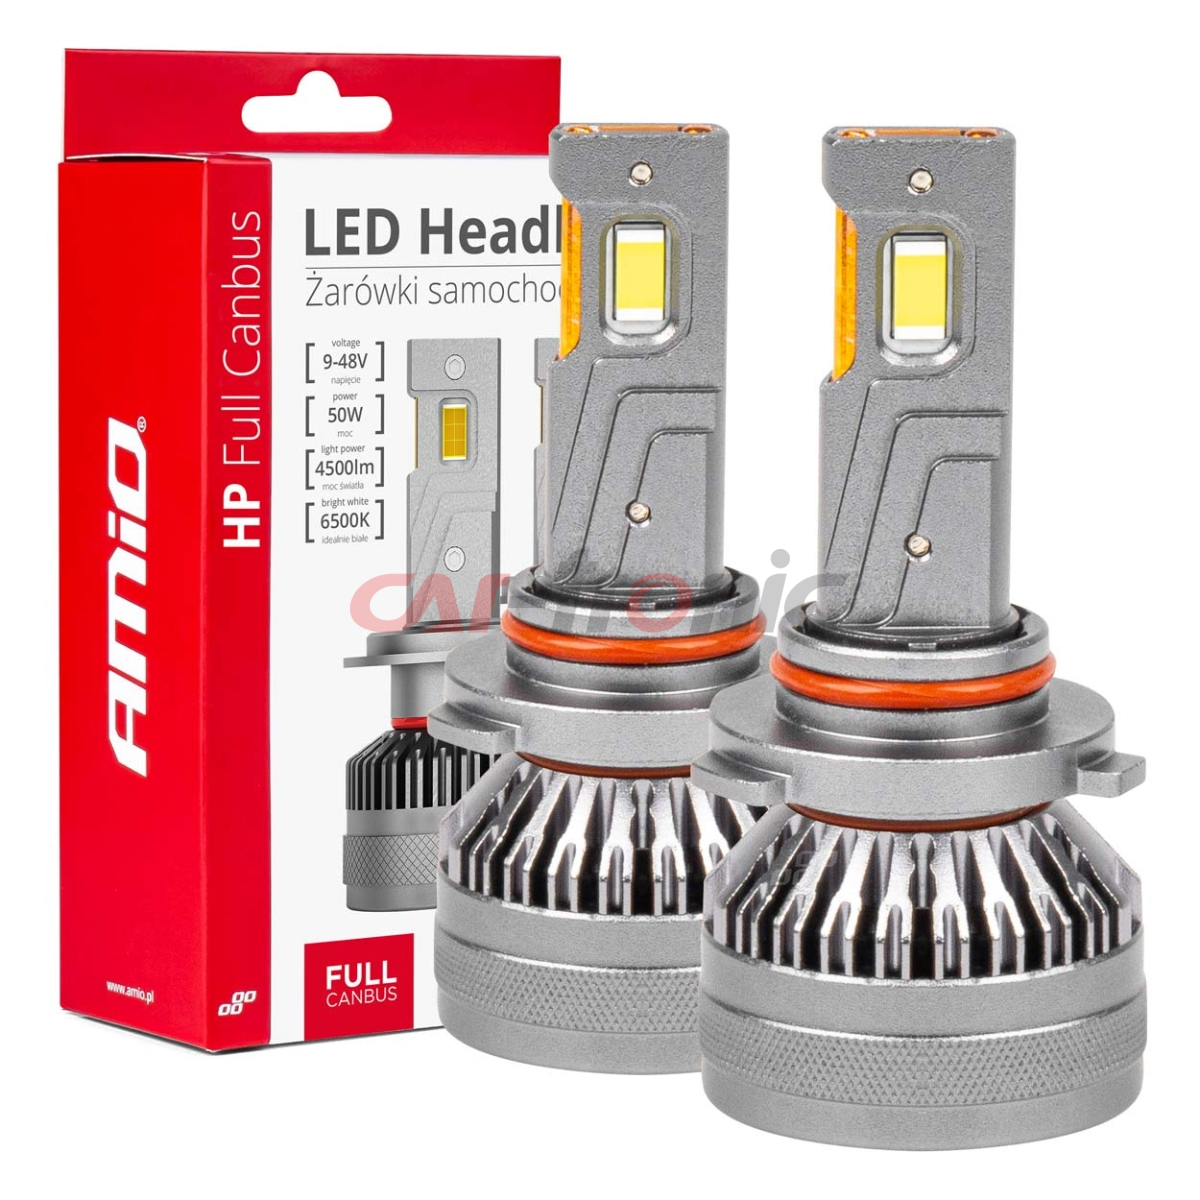 Żarówki samochodowe LED seria HP Full Canbus HB3 9005/HIR1 9011/H10 6500K AMIO-03678